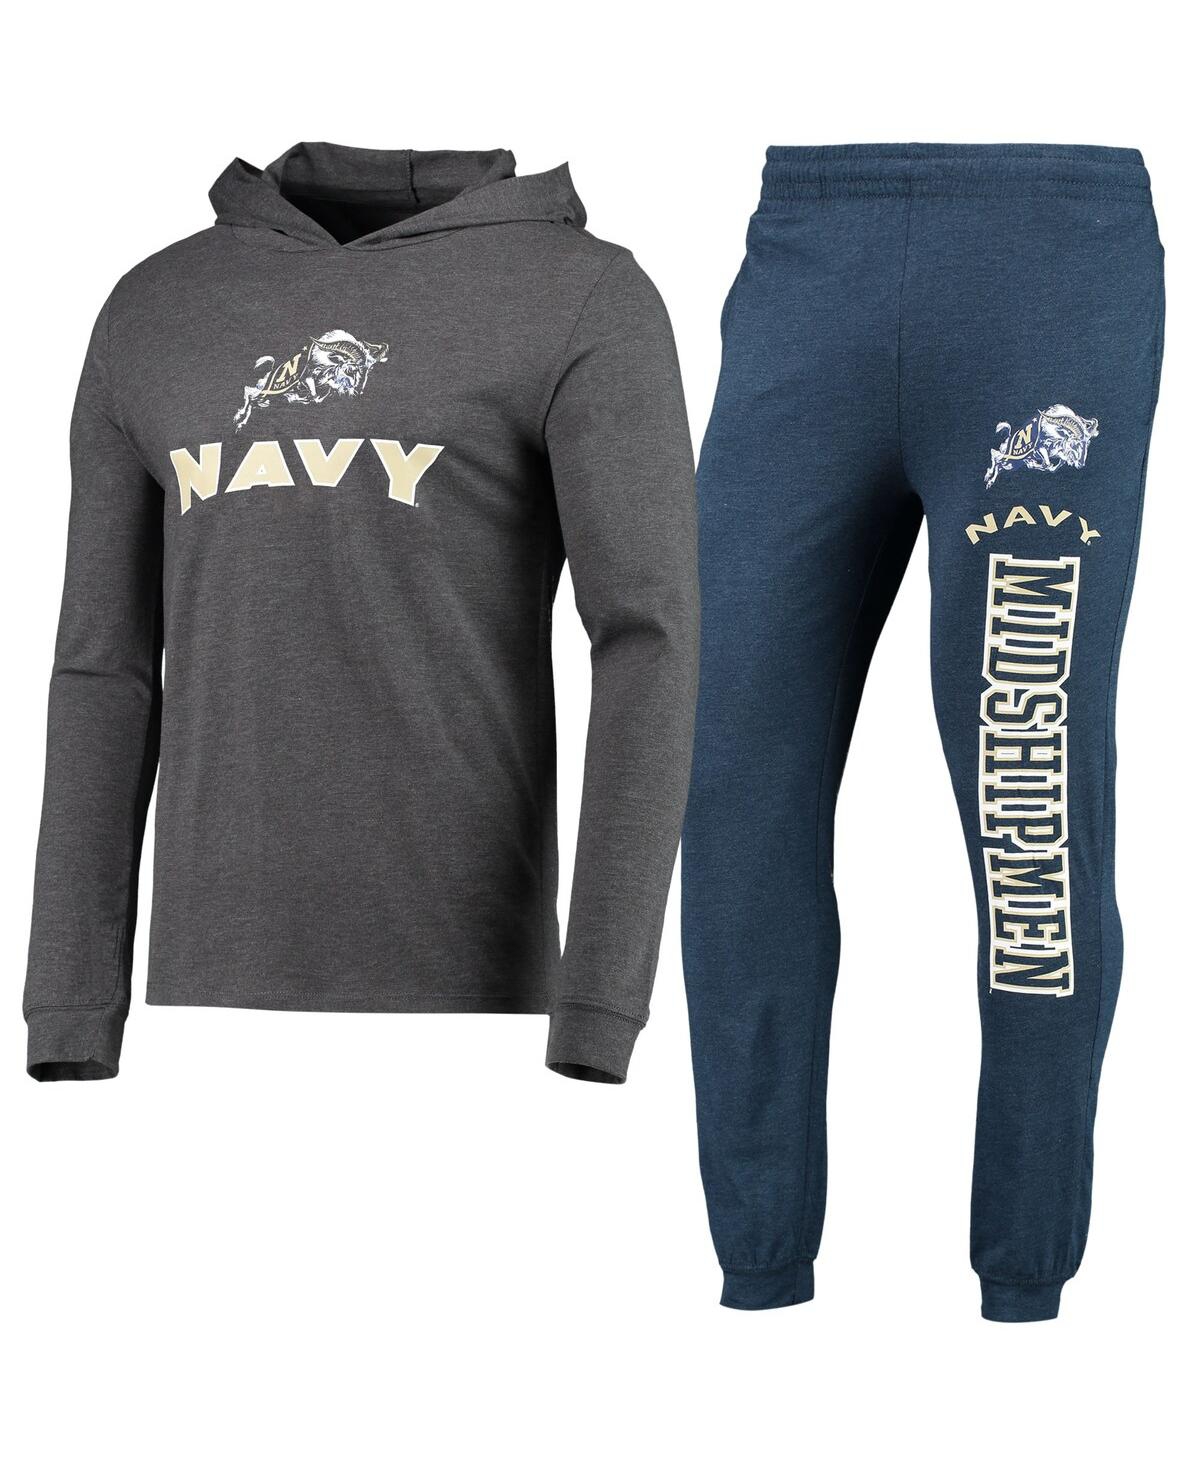 Men's Concepts Sport Navy, Heather Charcoal Navy Midshipmen Meter Long Sleeve Hoodie T-shirt and Jogger Pajama Set - Navy, Heather Charcoal